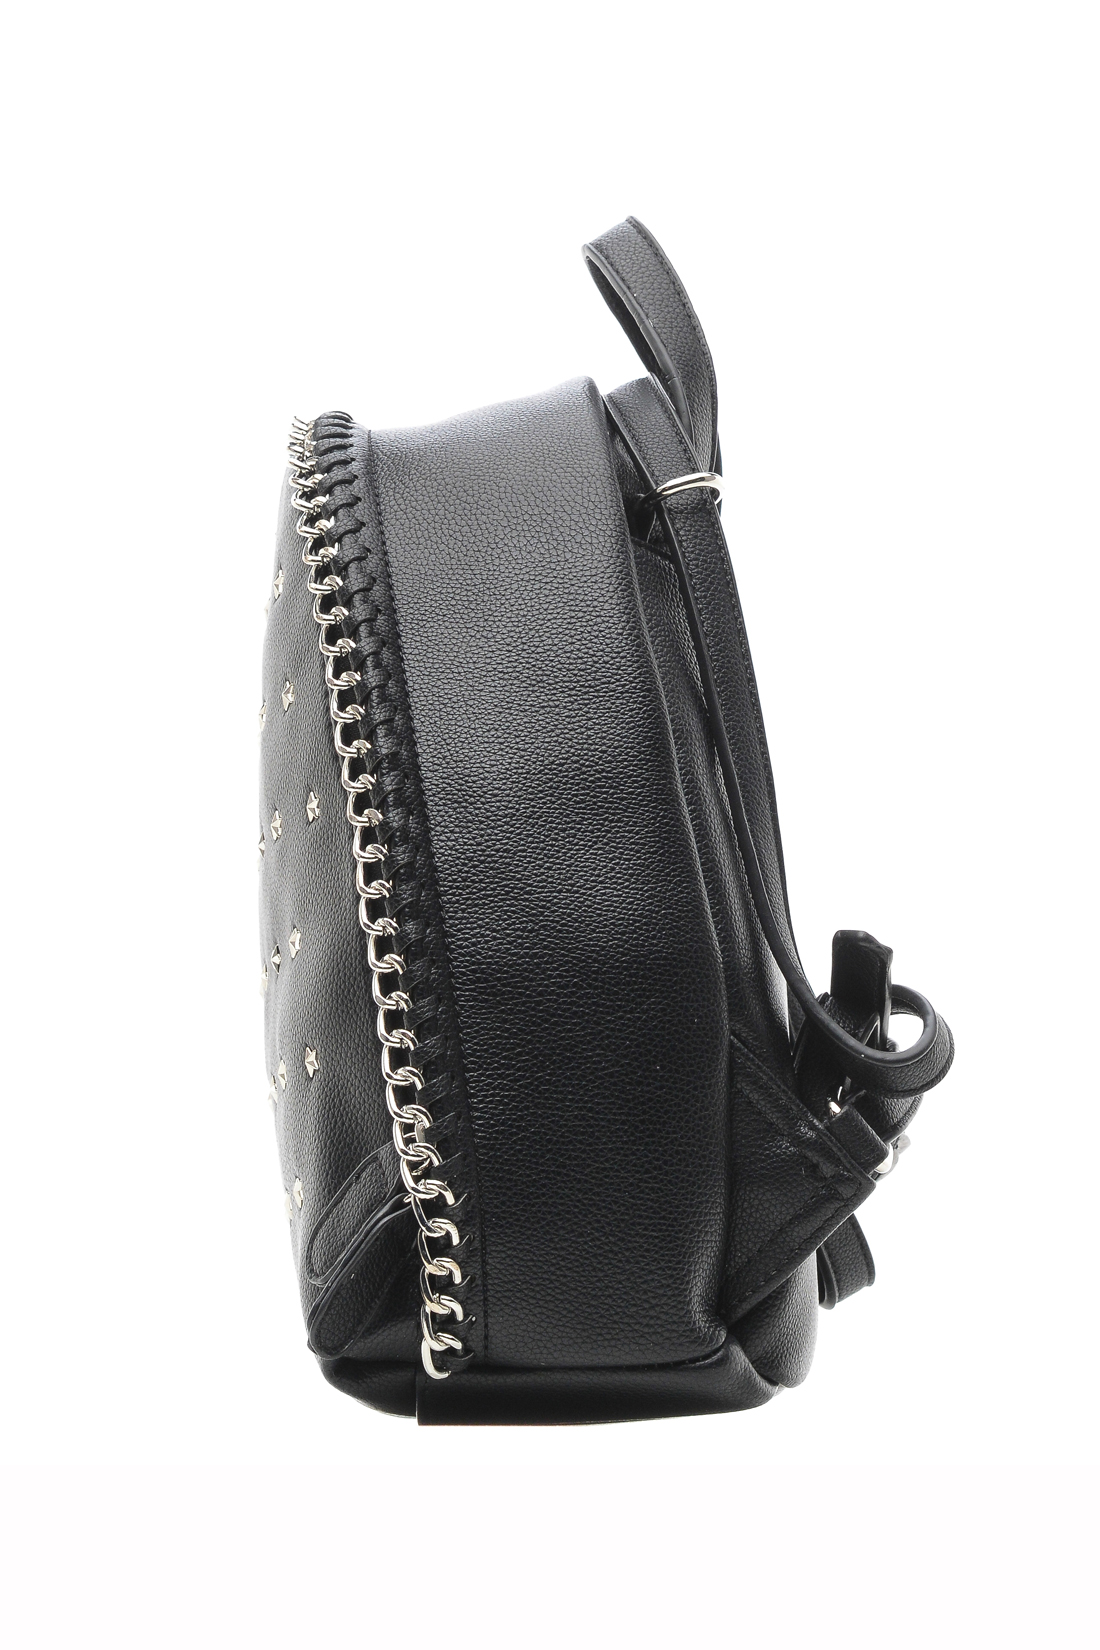 Рюкзак с металлической отделкой (арт. baon B379004), размер Без/раз, цвет черный Рюкзак с металлической отделкой (арт. baon B379004) - фото 6